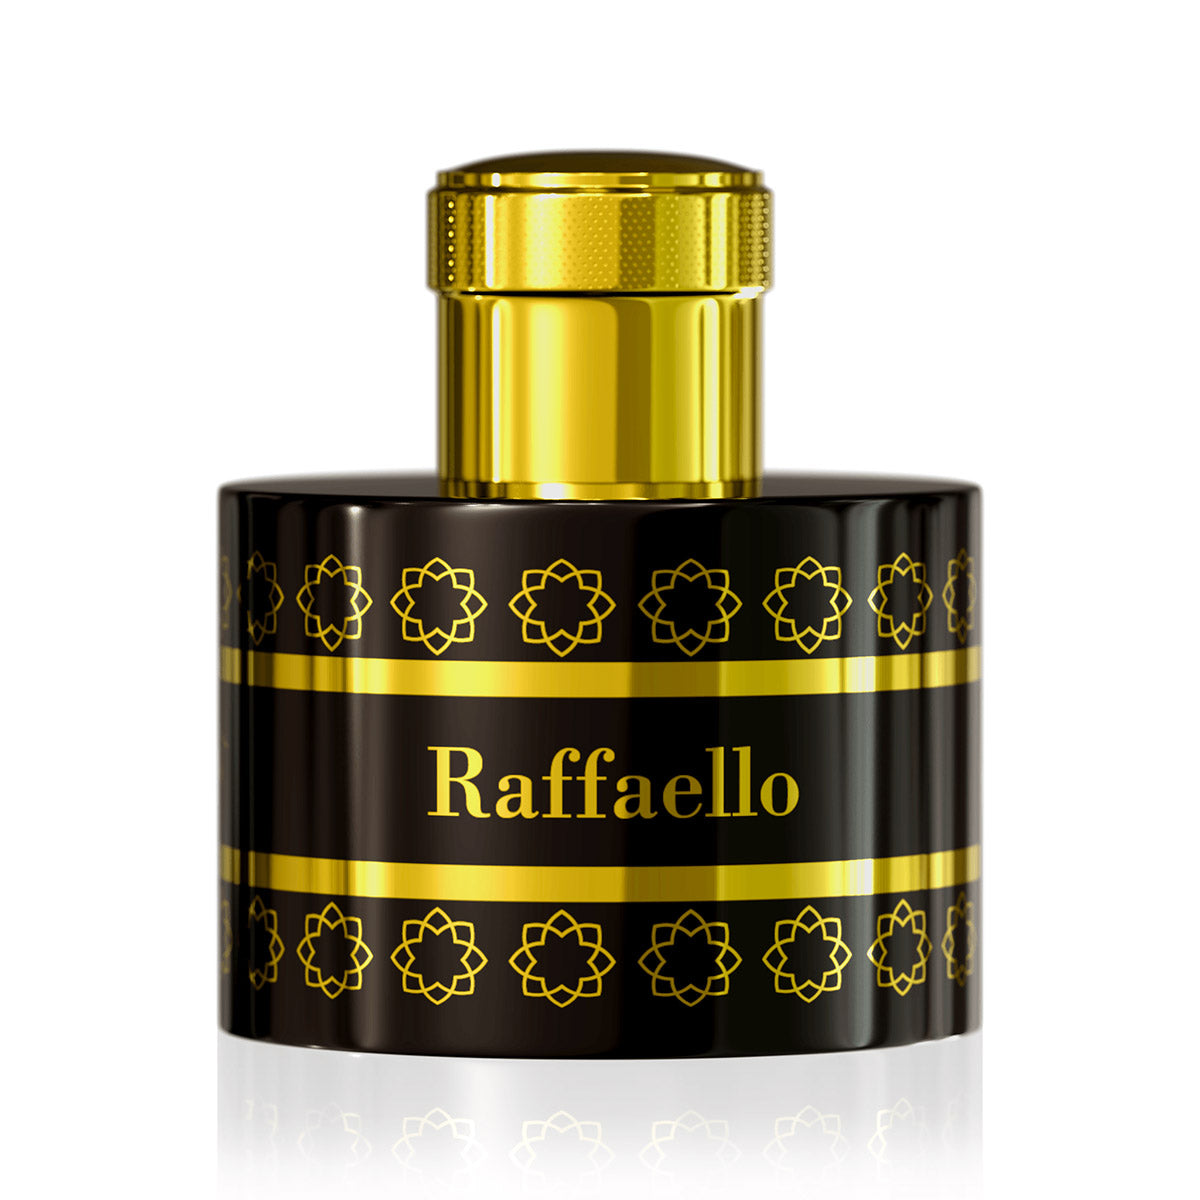 Raffaello - Pantheon Roma - EP 100ml